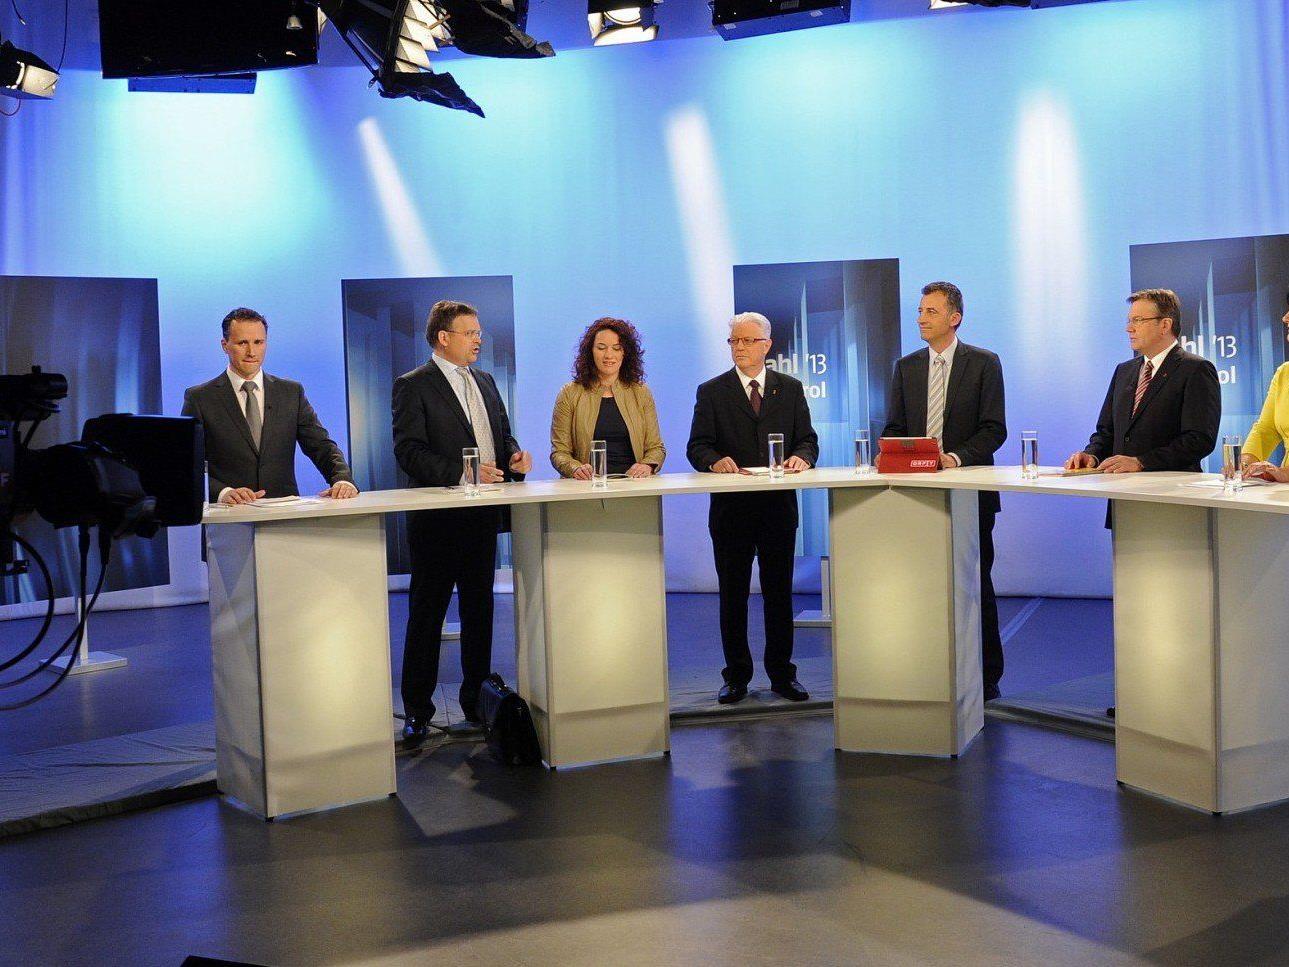 Die Tiroler Spitzenkandidaten bei einer TV-Debatte.